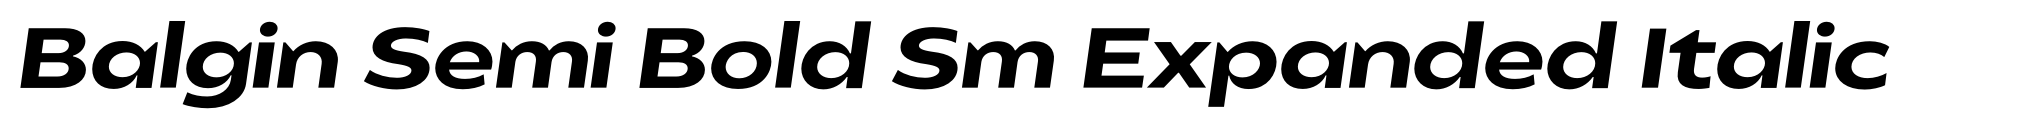 Balgin Semi Bold Sm Expanded Italic image